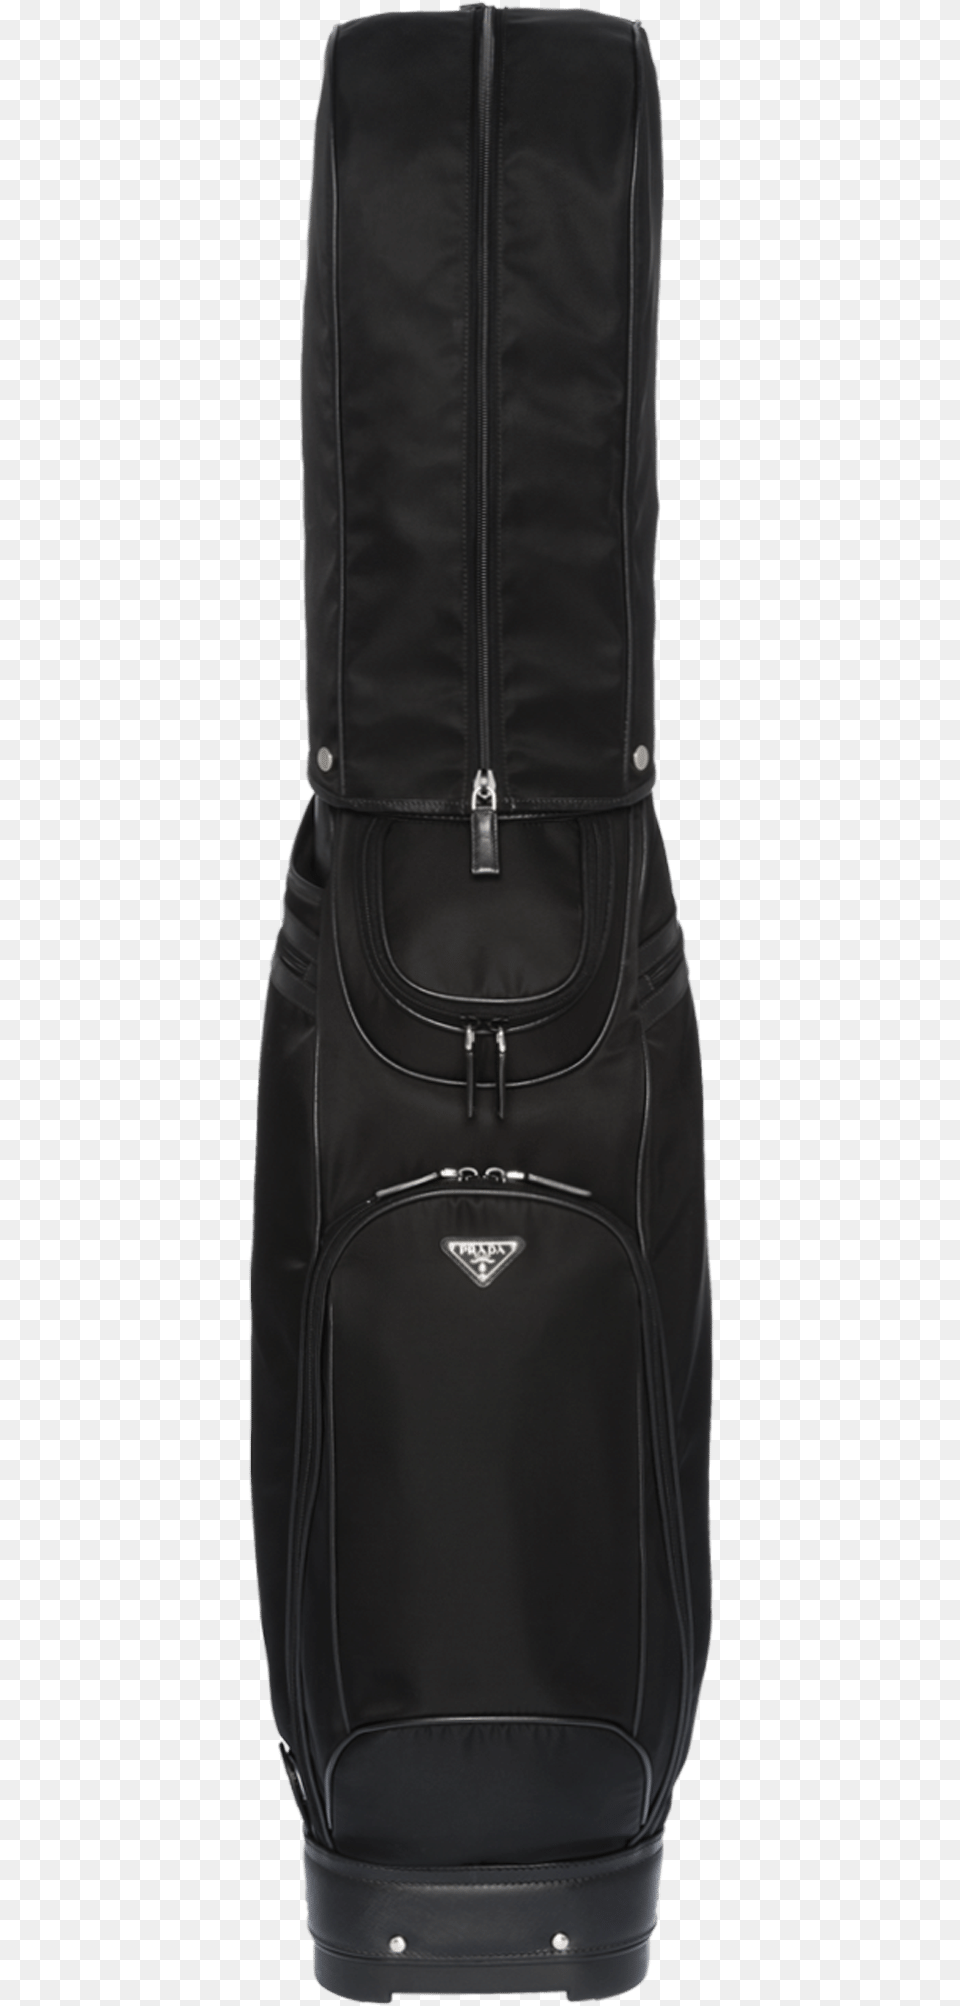 Golf Bag, Backpack Free Transparent Png